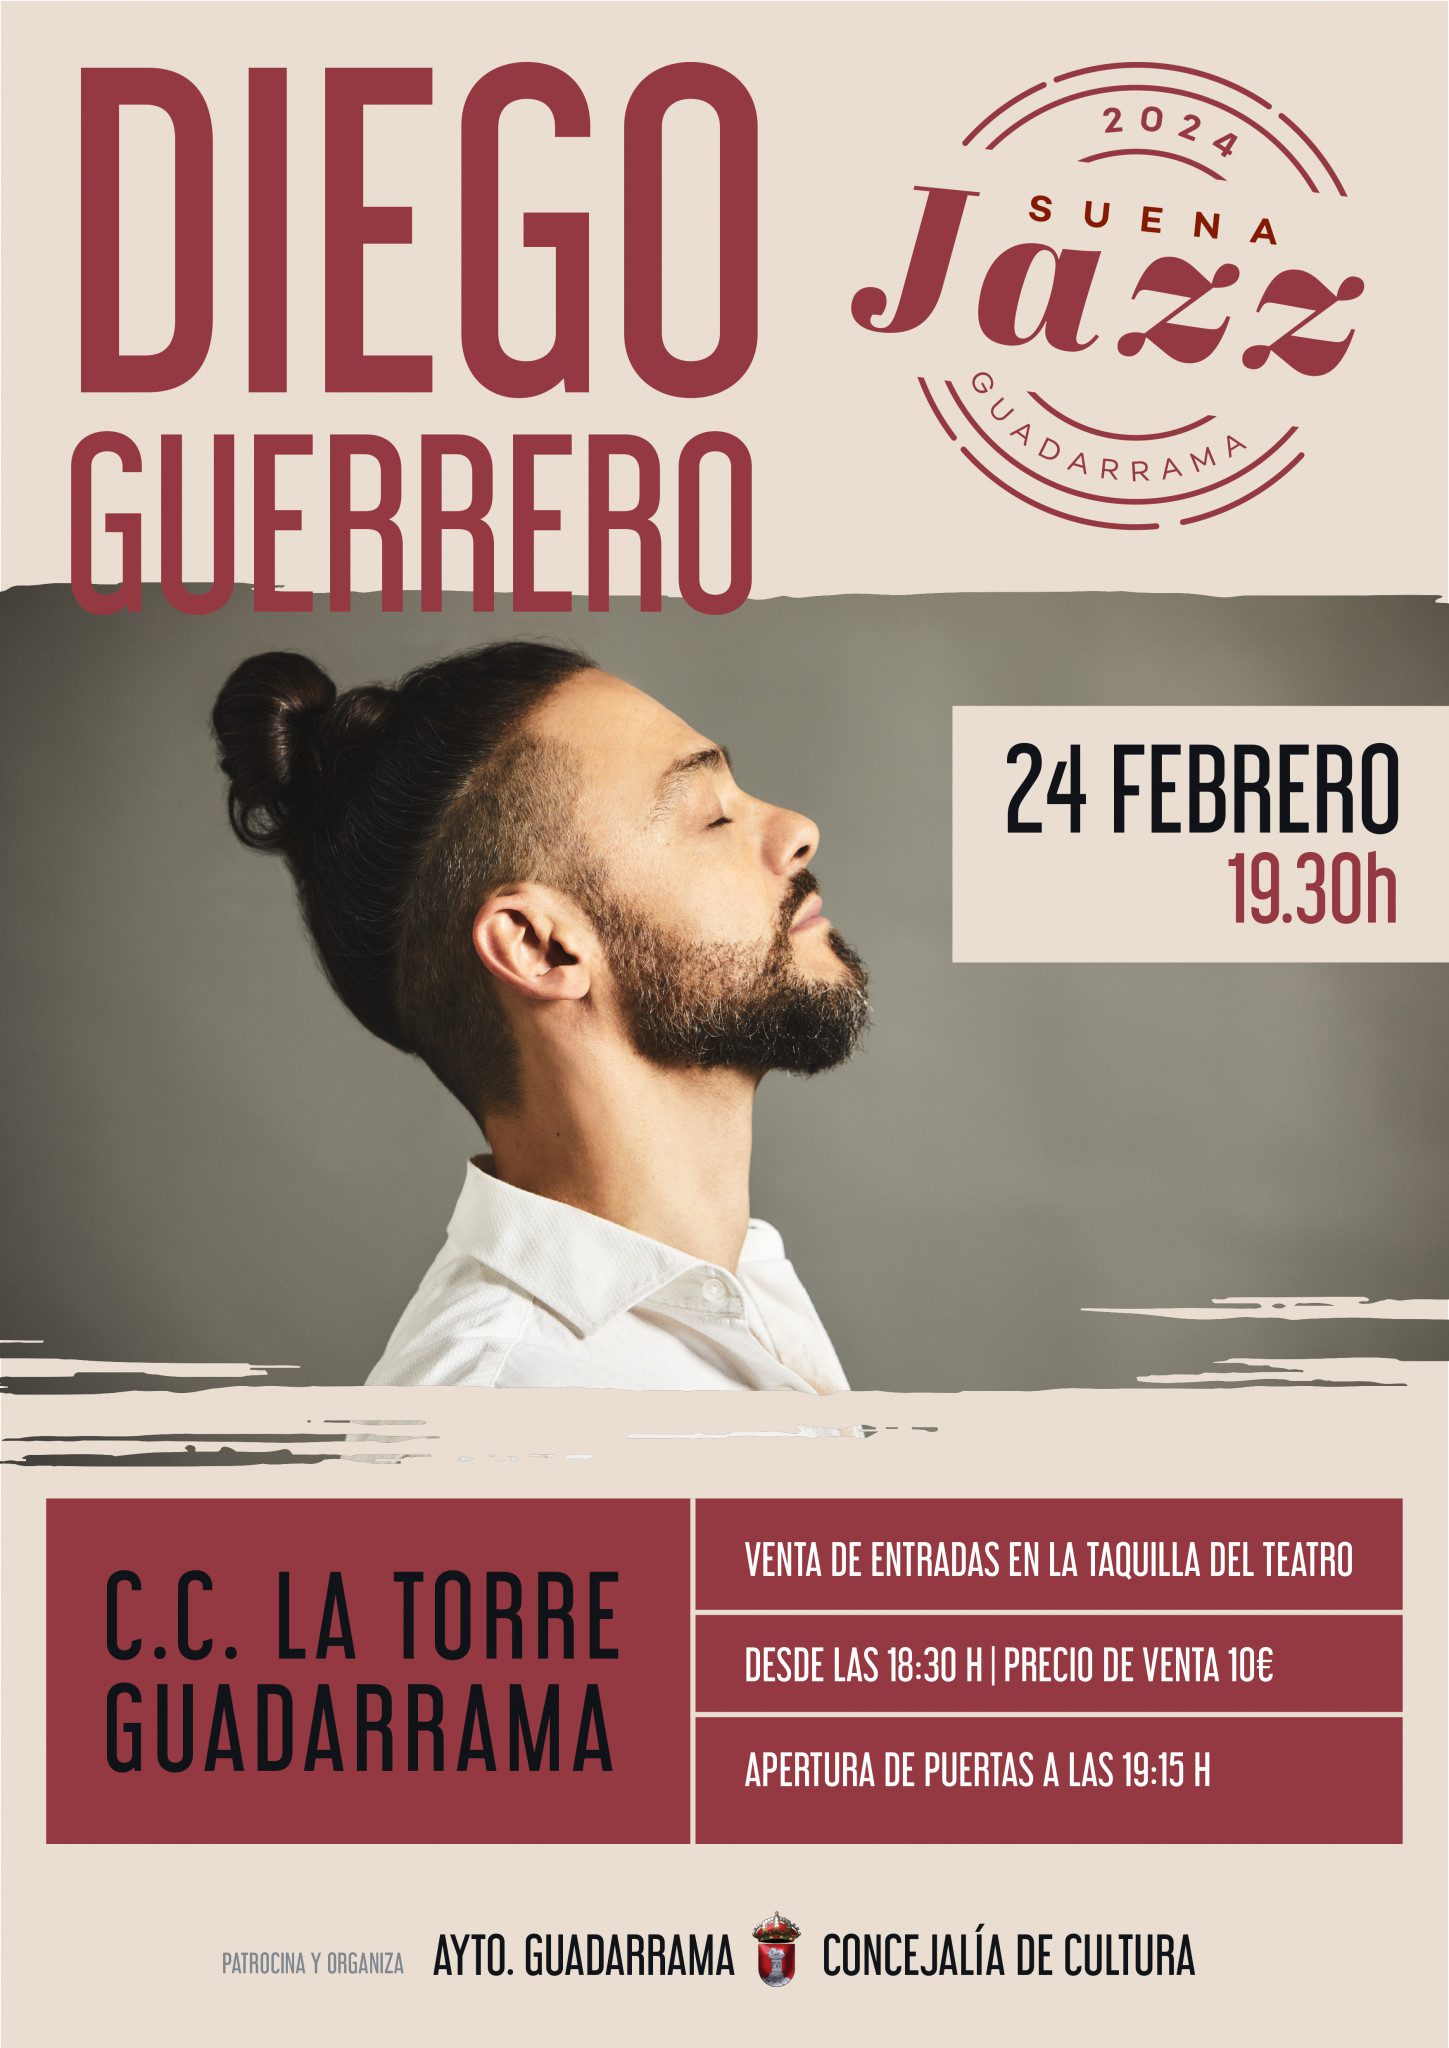 Cartel del concierto de Diego Guerrero en Guadarrama